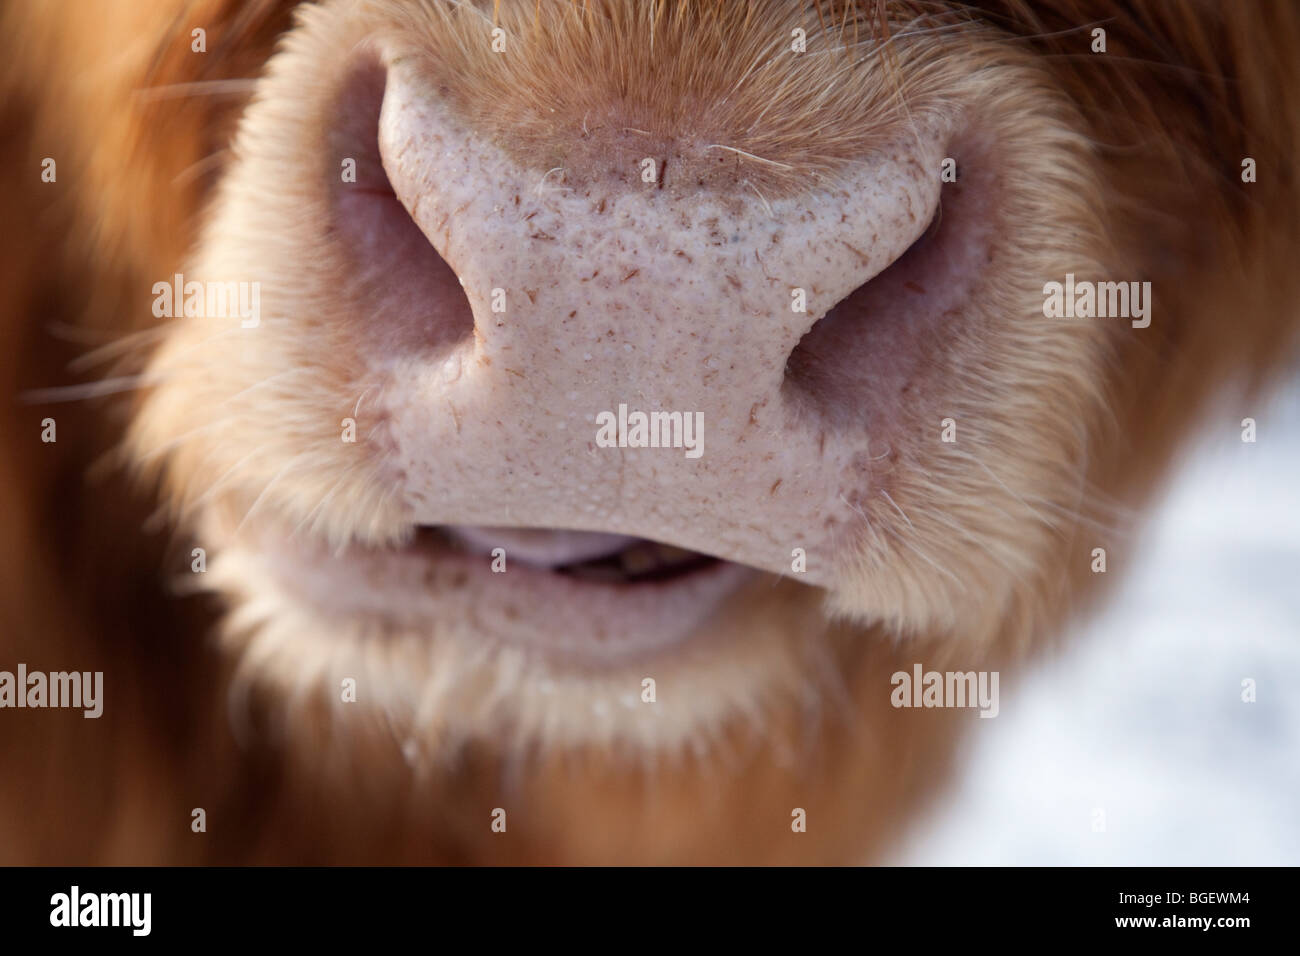 Highland mucca naso e bocca di masticazione di close-up. Inghilterra Regno Unito Gran Bretagna l'Europa. Foto Stock